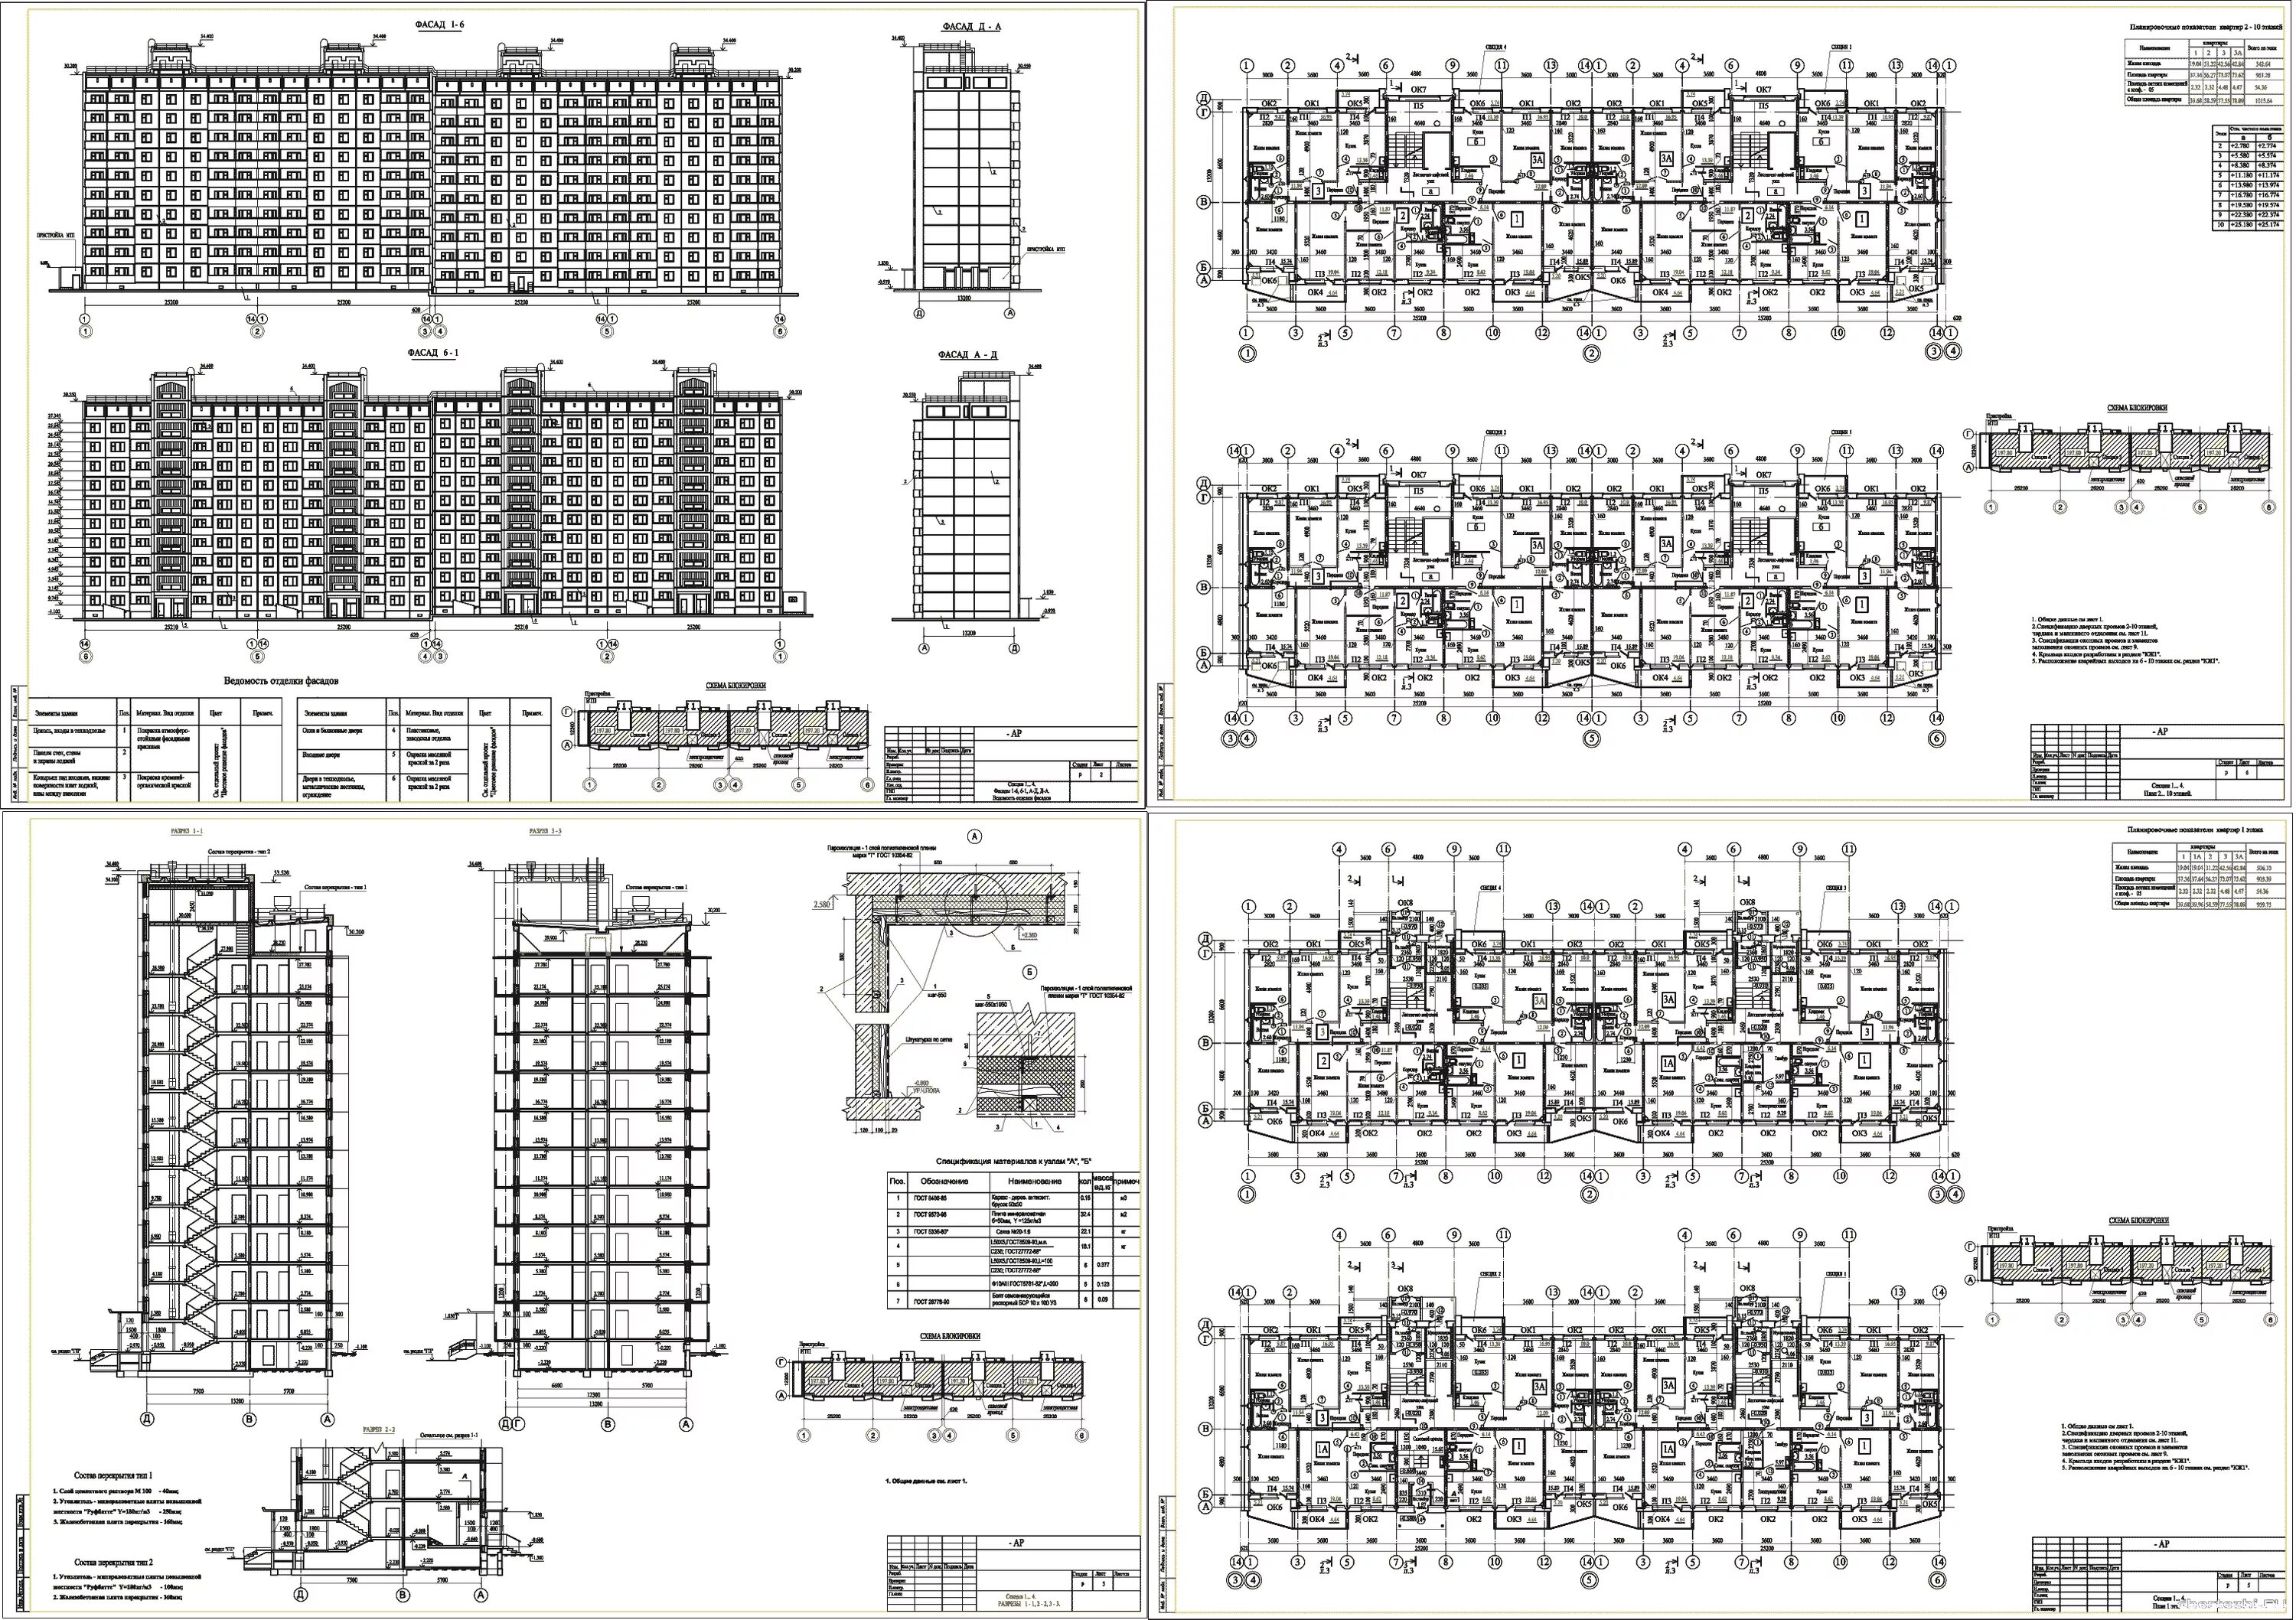 План дома 9 этажей панельный. Панельный 10 этажный дом чертеж. Чертежи многоэтажных домов 121. Типы 12 этажных панельных домов. Панельный жилой дом планировка методом ячеек.